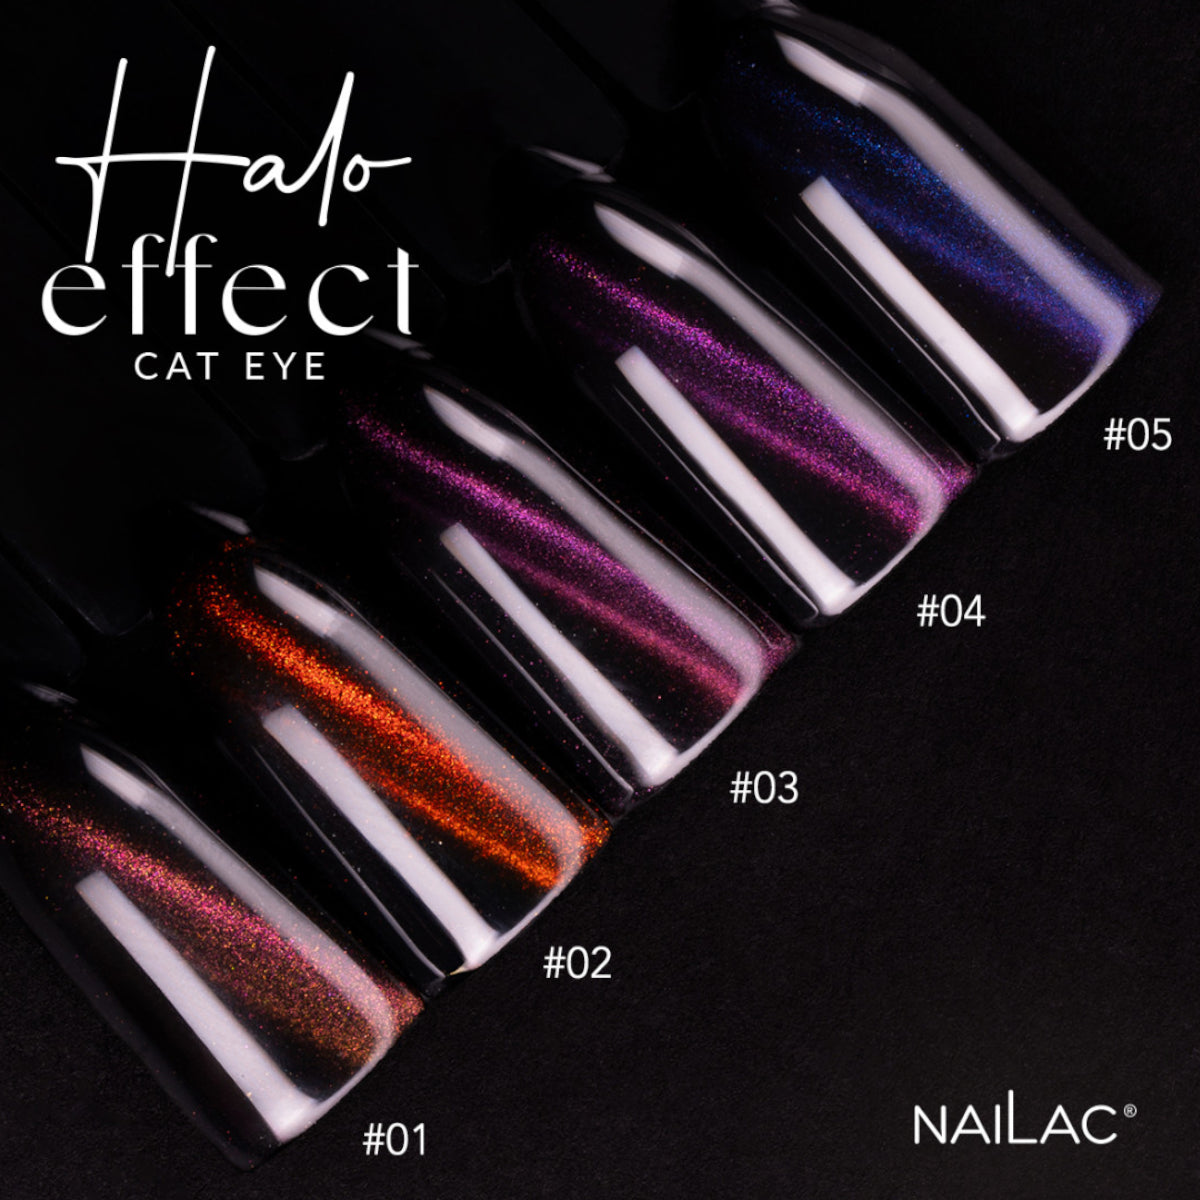 NaiLac UV/LED Gel Nail Polish Halo Effect Cat Eye 03